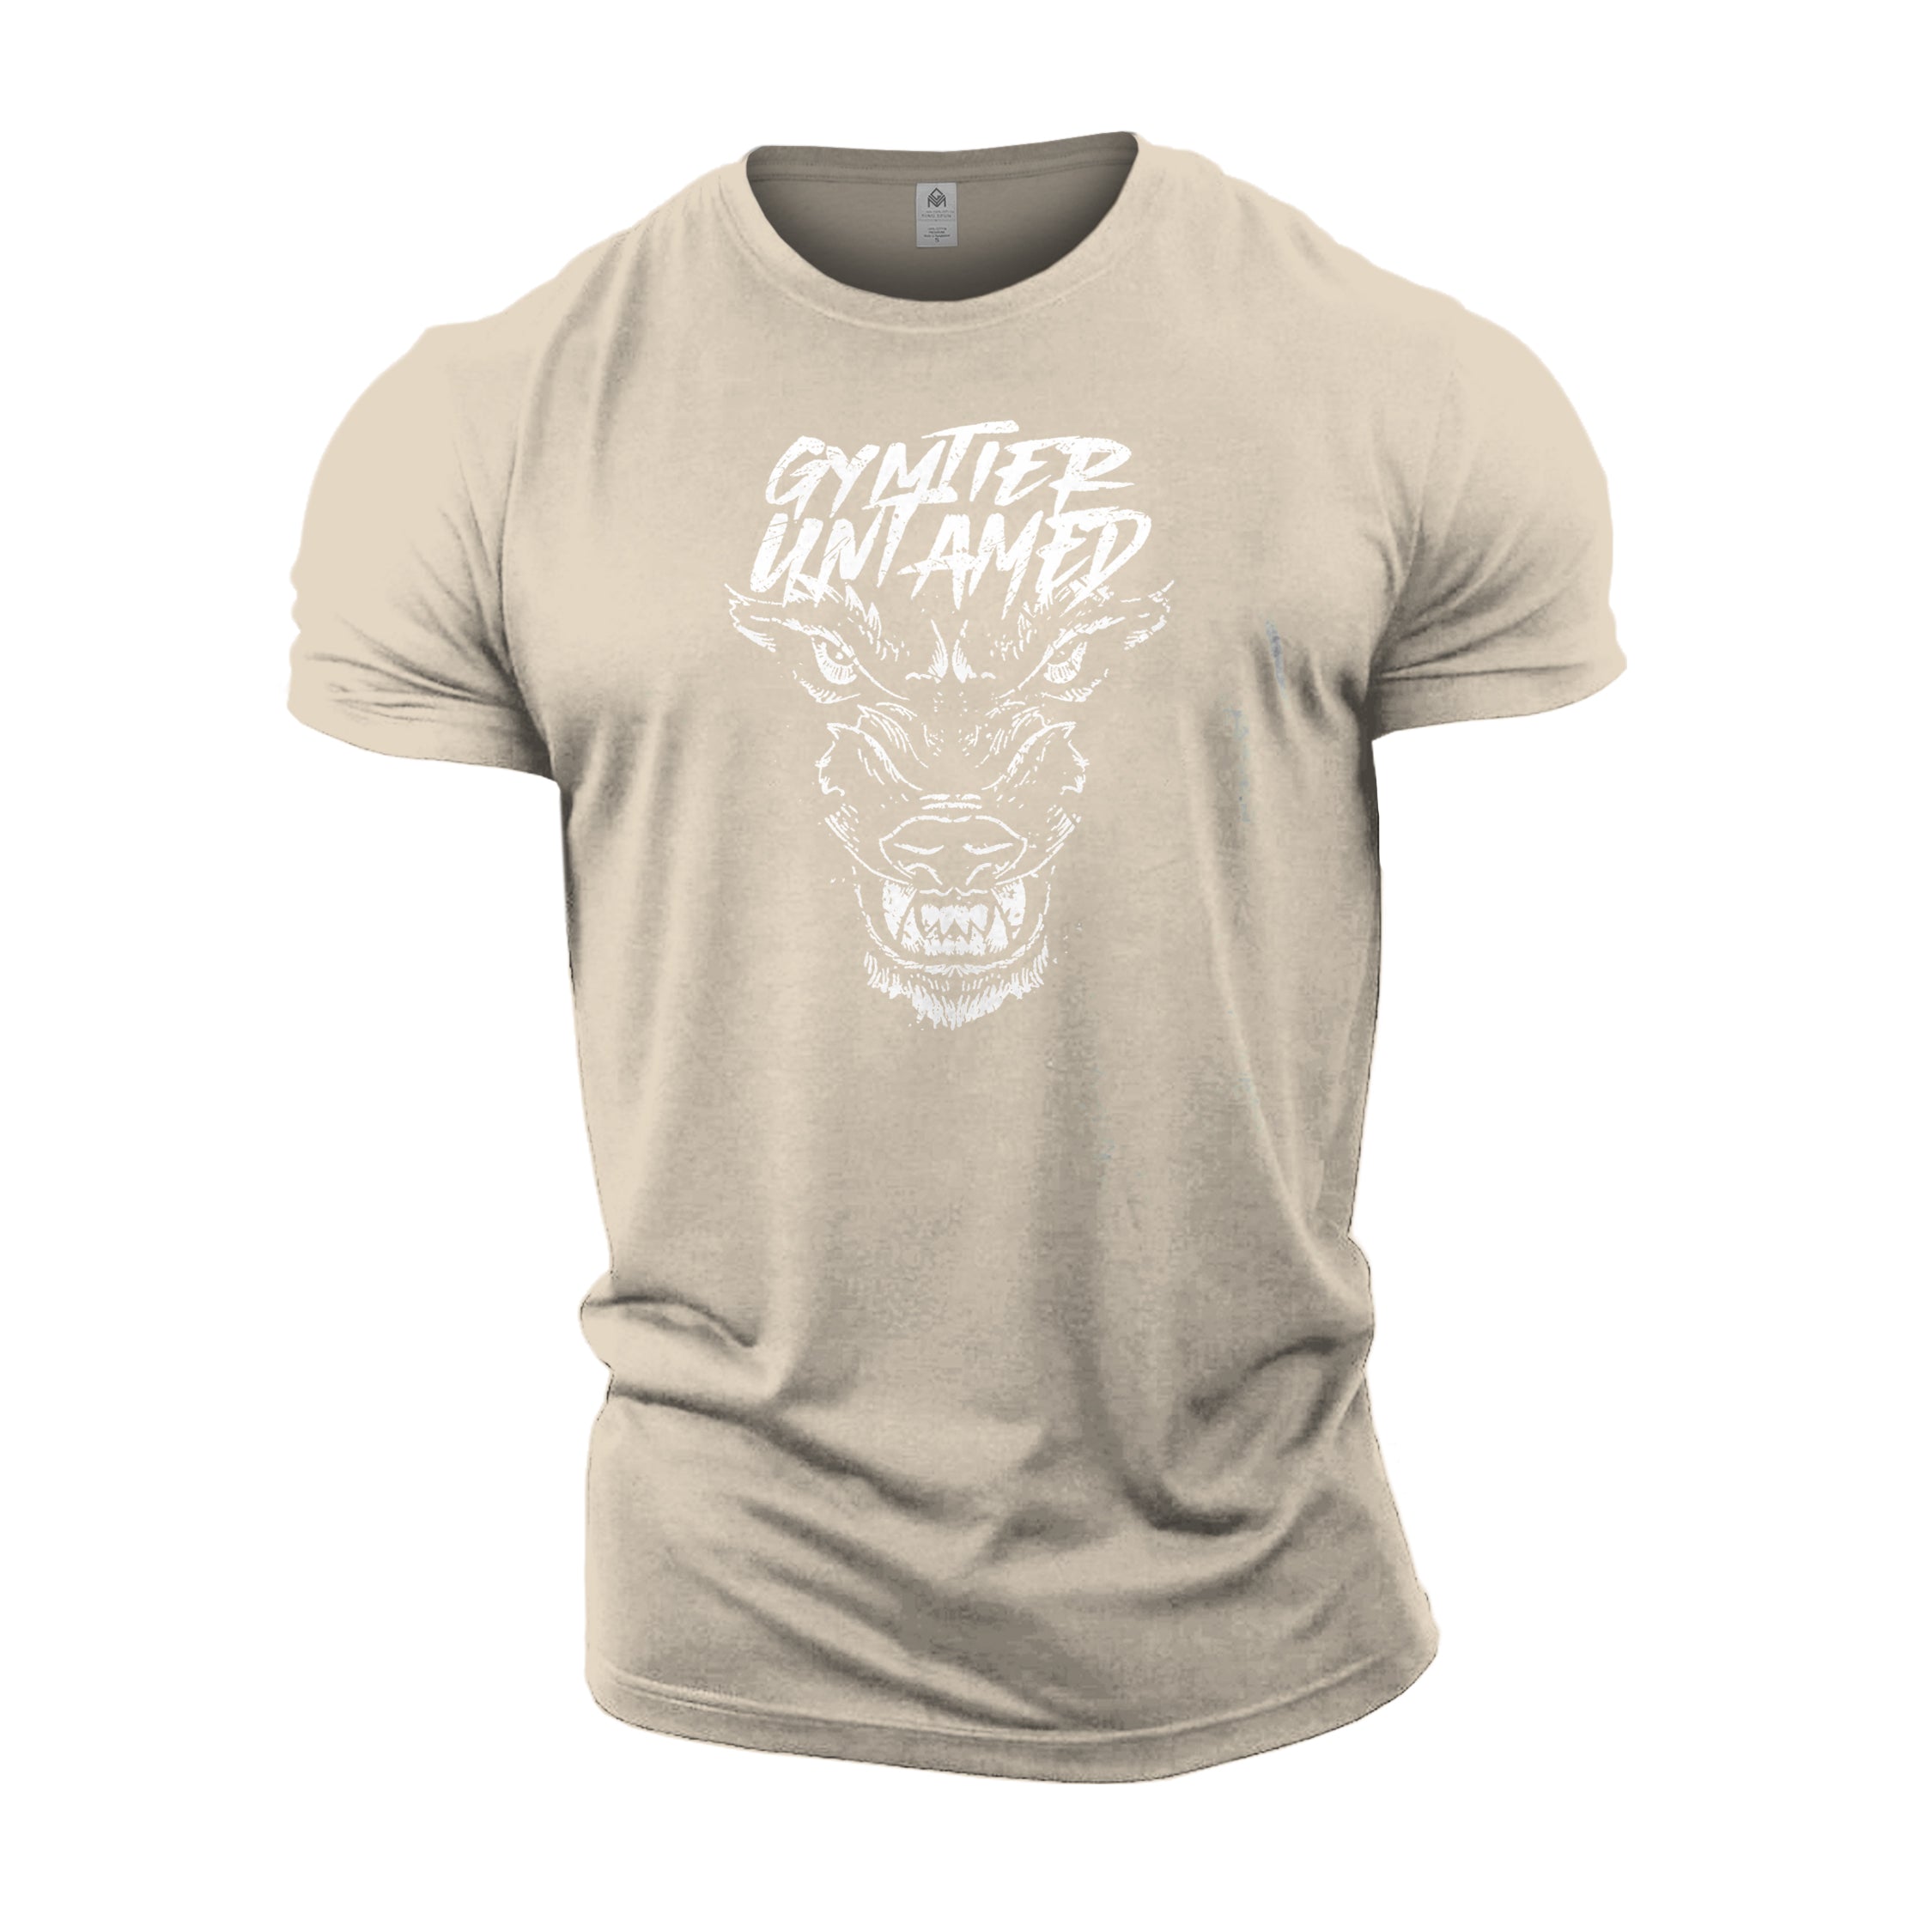 Untamed Wolf - Gym T-Shirt